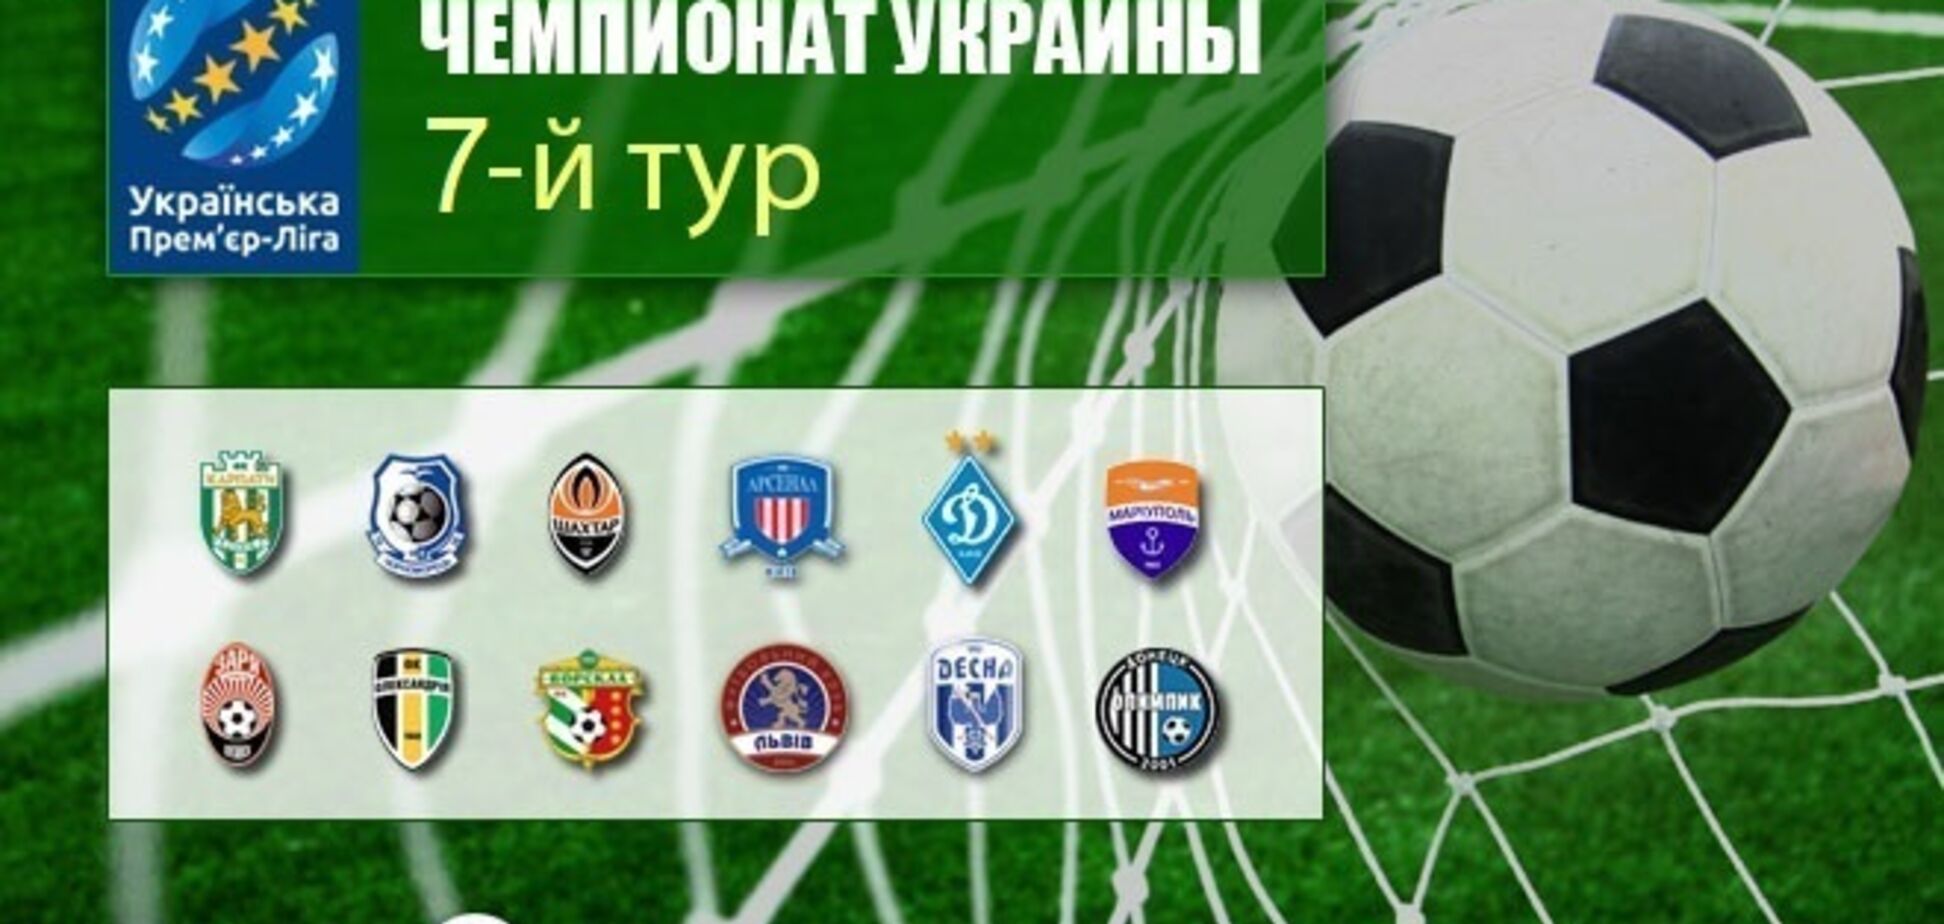 7-й тур чемпіонату України з футболу: результати та відеоогляди